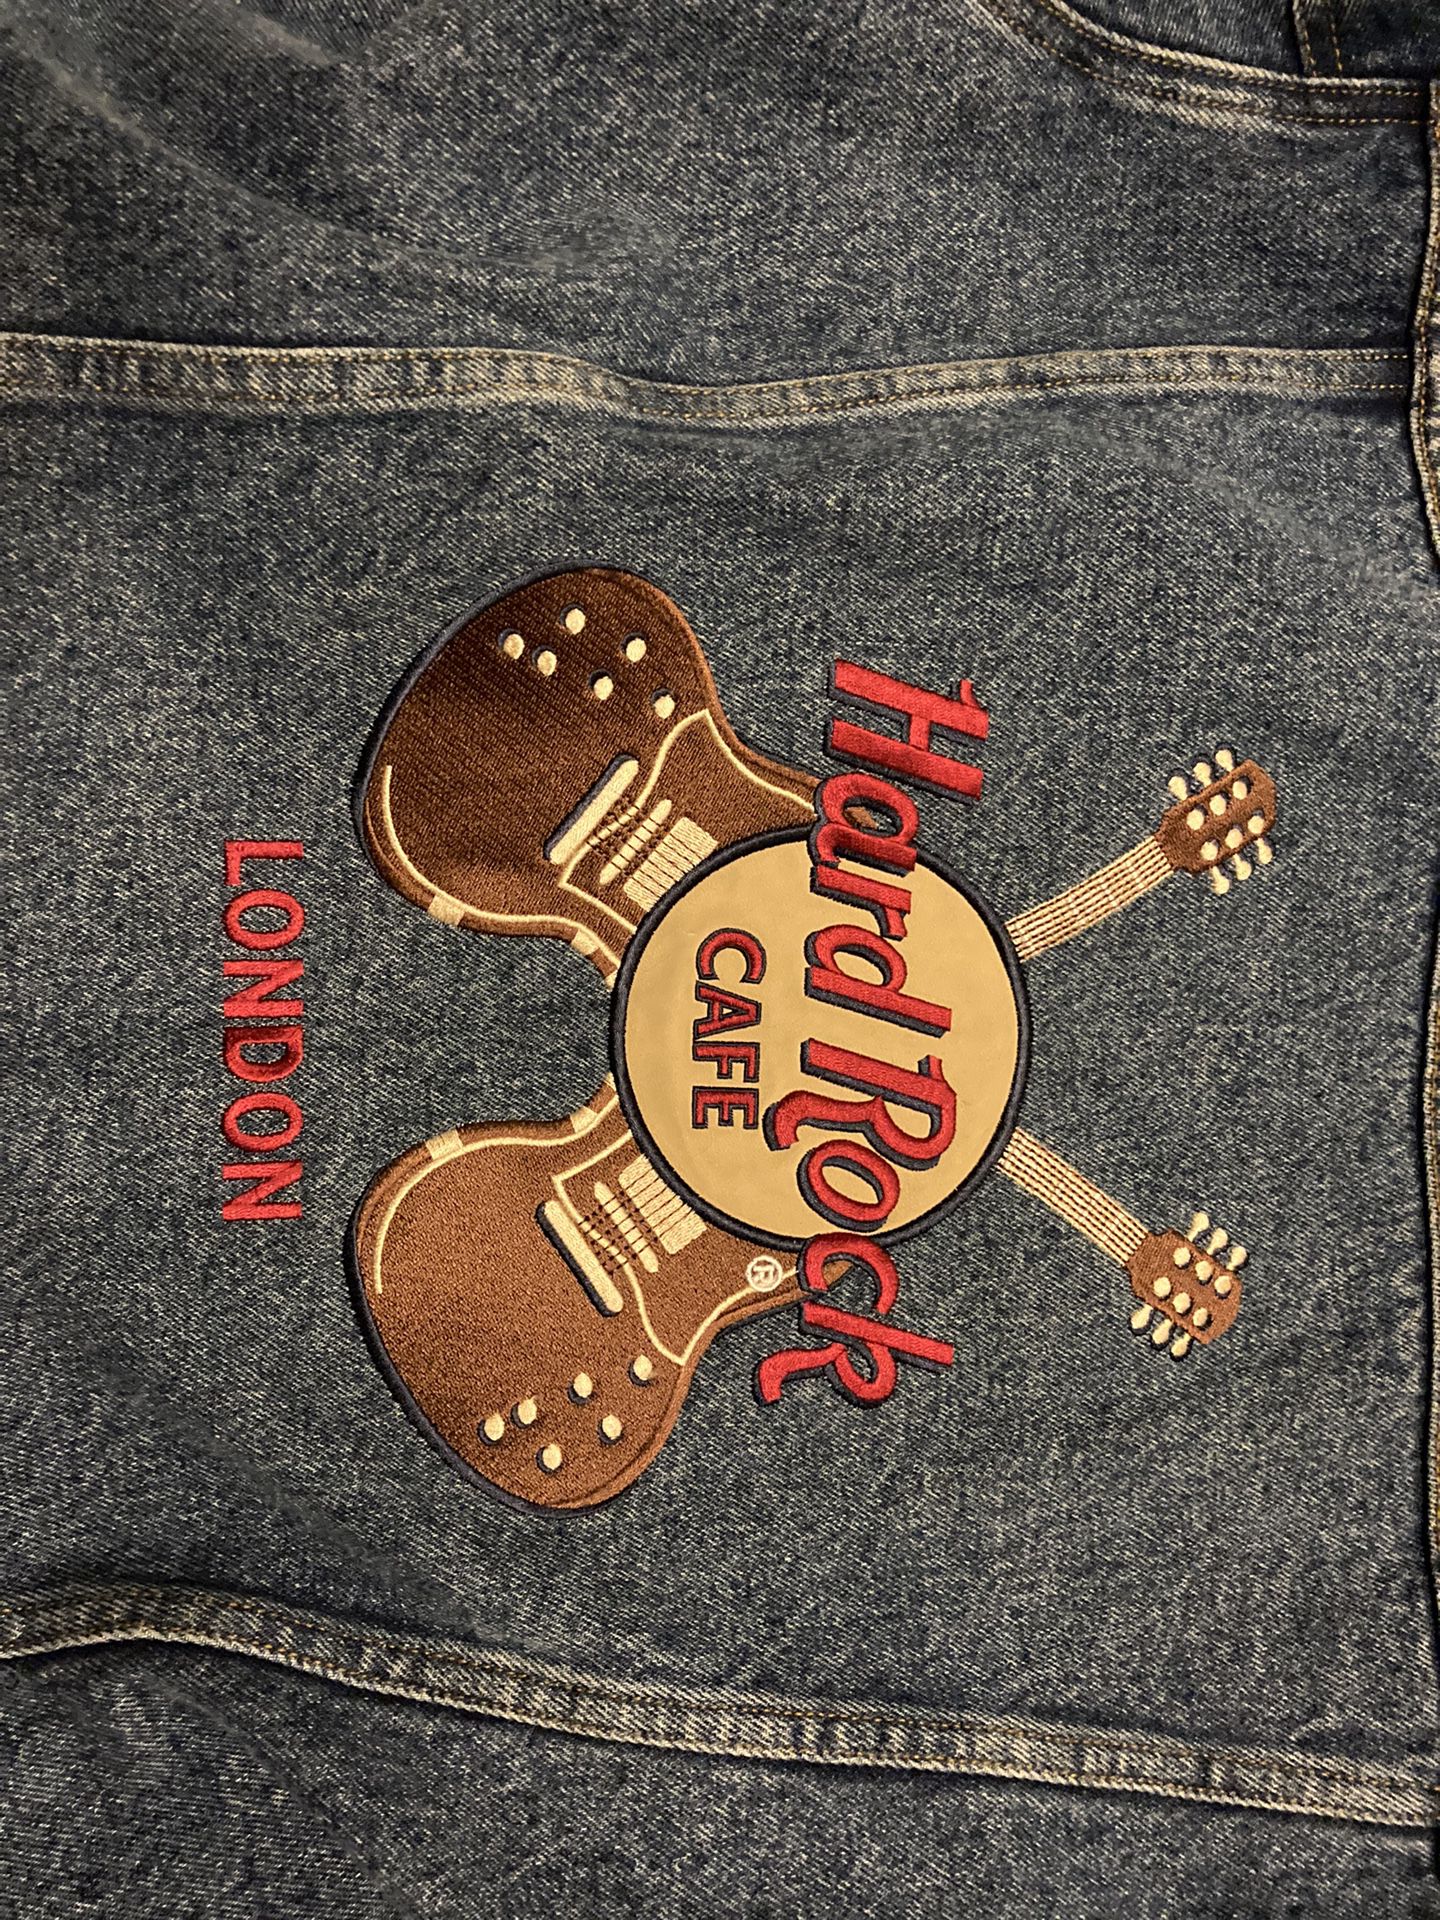 Hard Rock Cafe London Blue Jean Jacket (M)